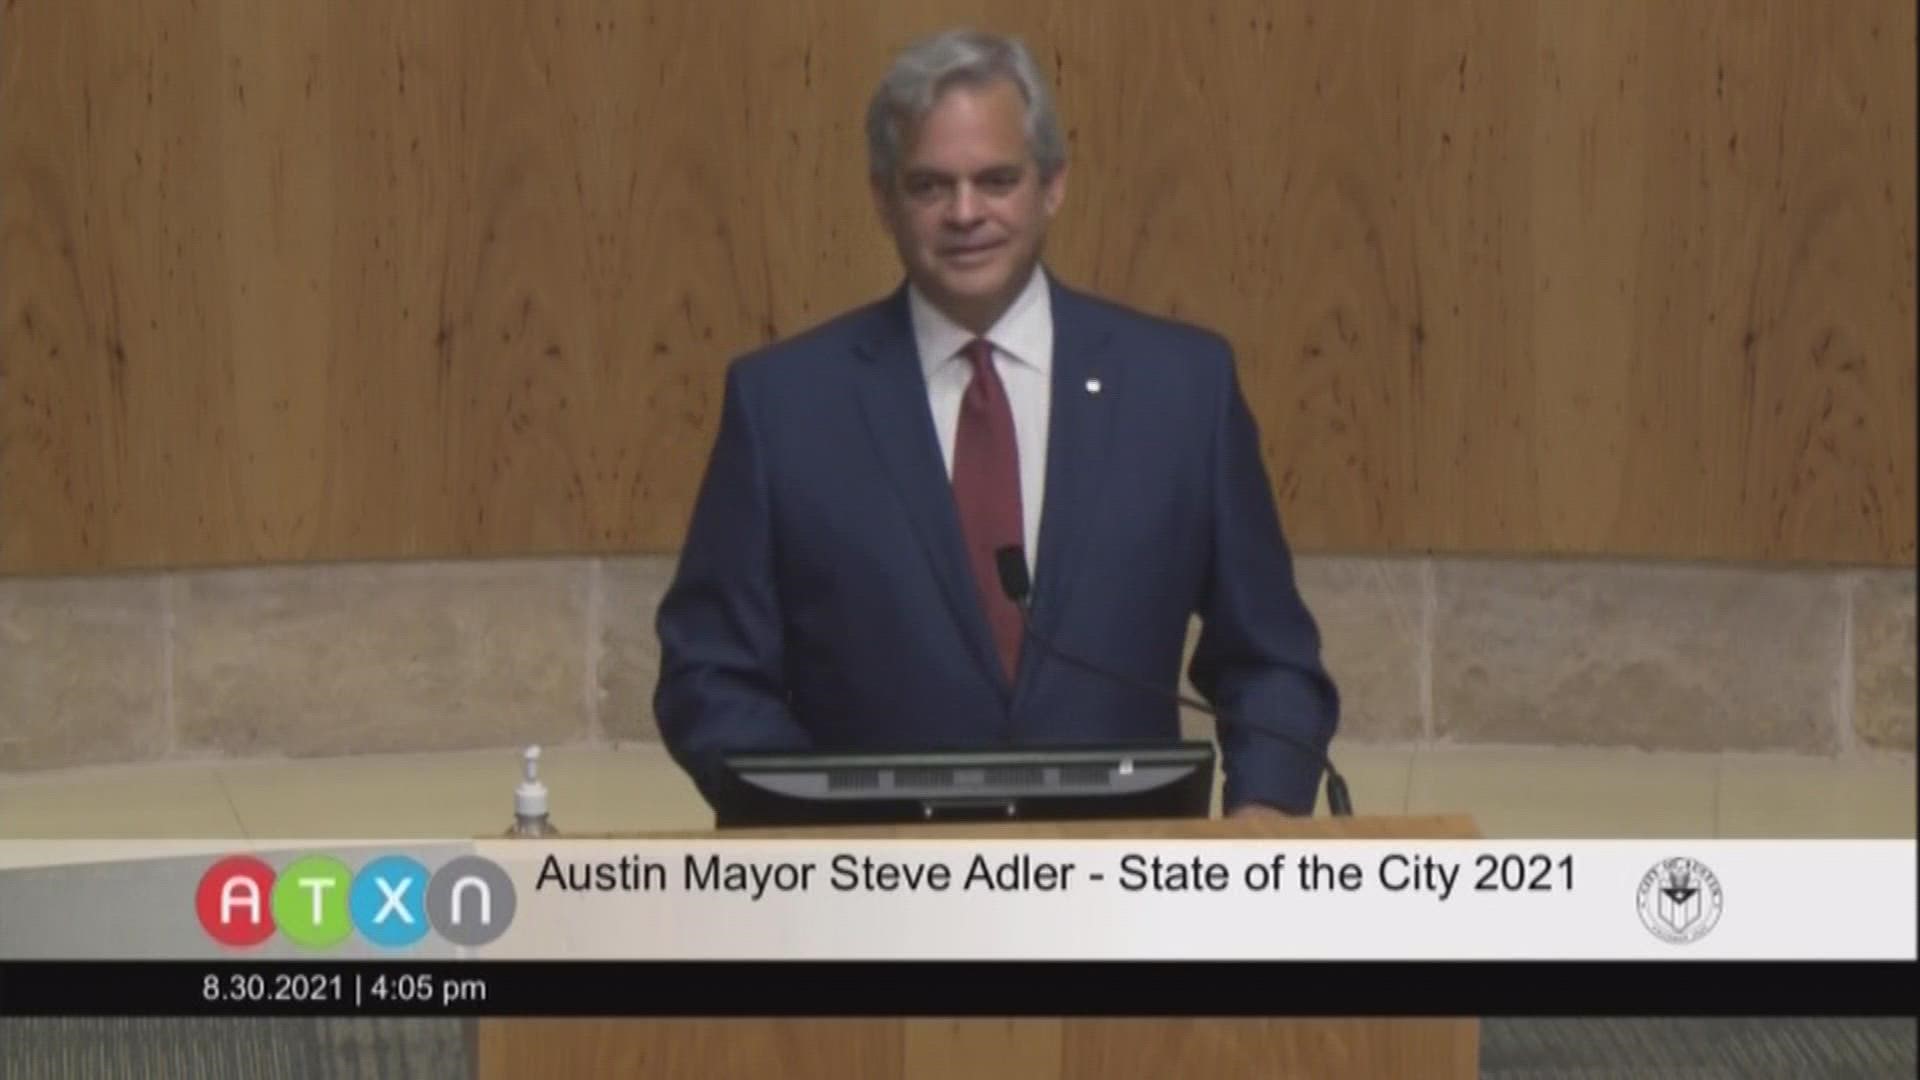 Rewatch Austin Mayor Steve Adler's State of the City 2021 address in full.